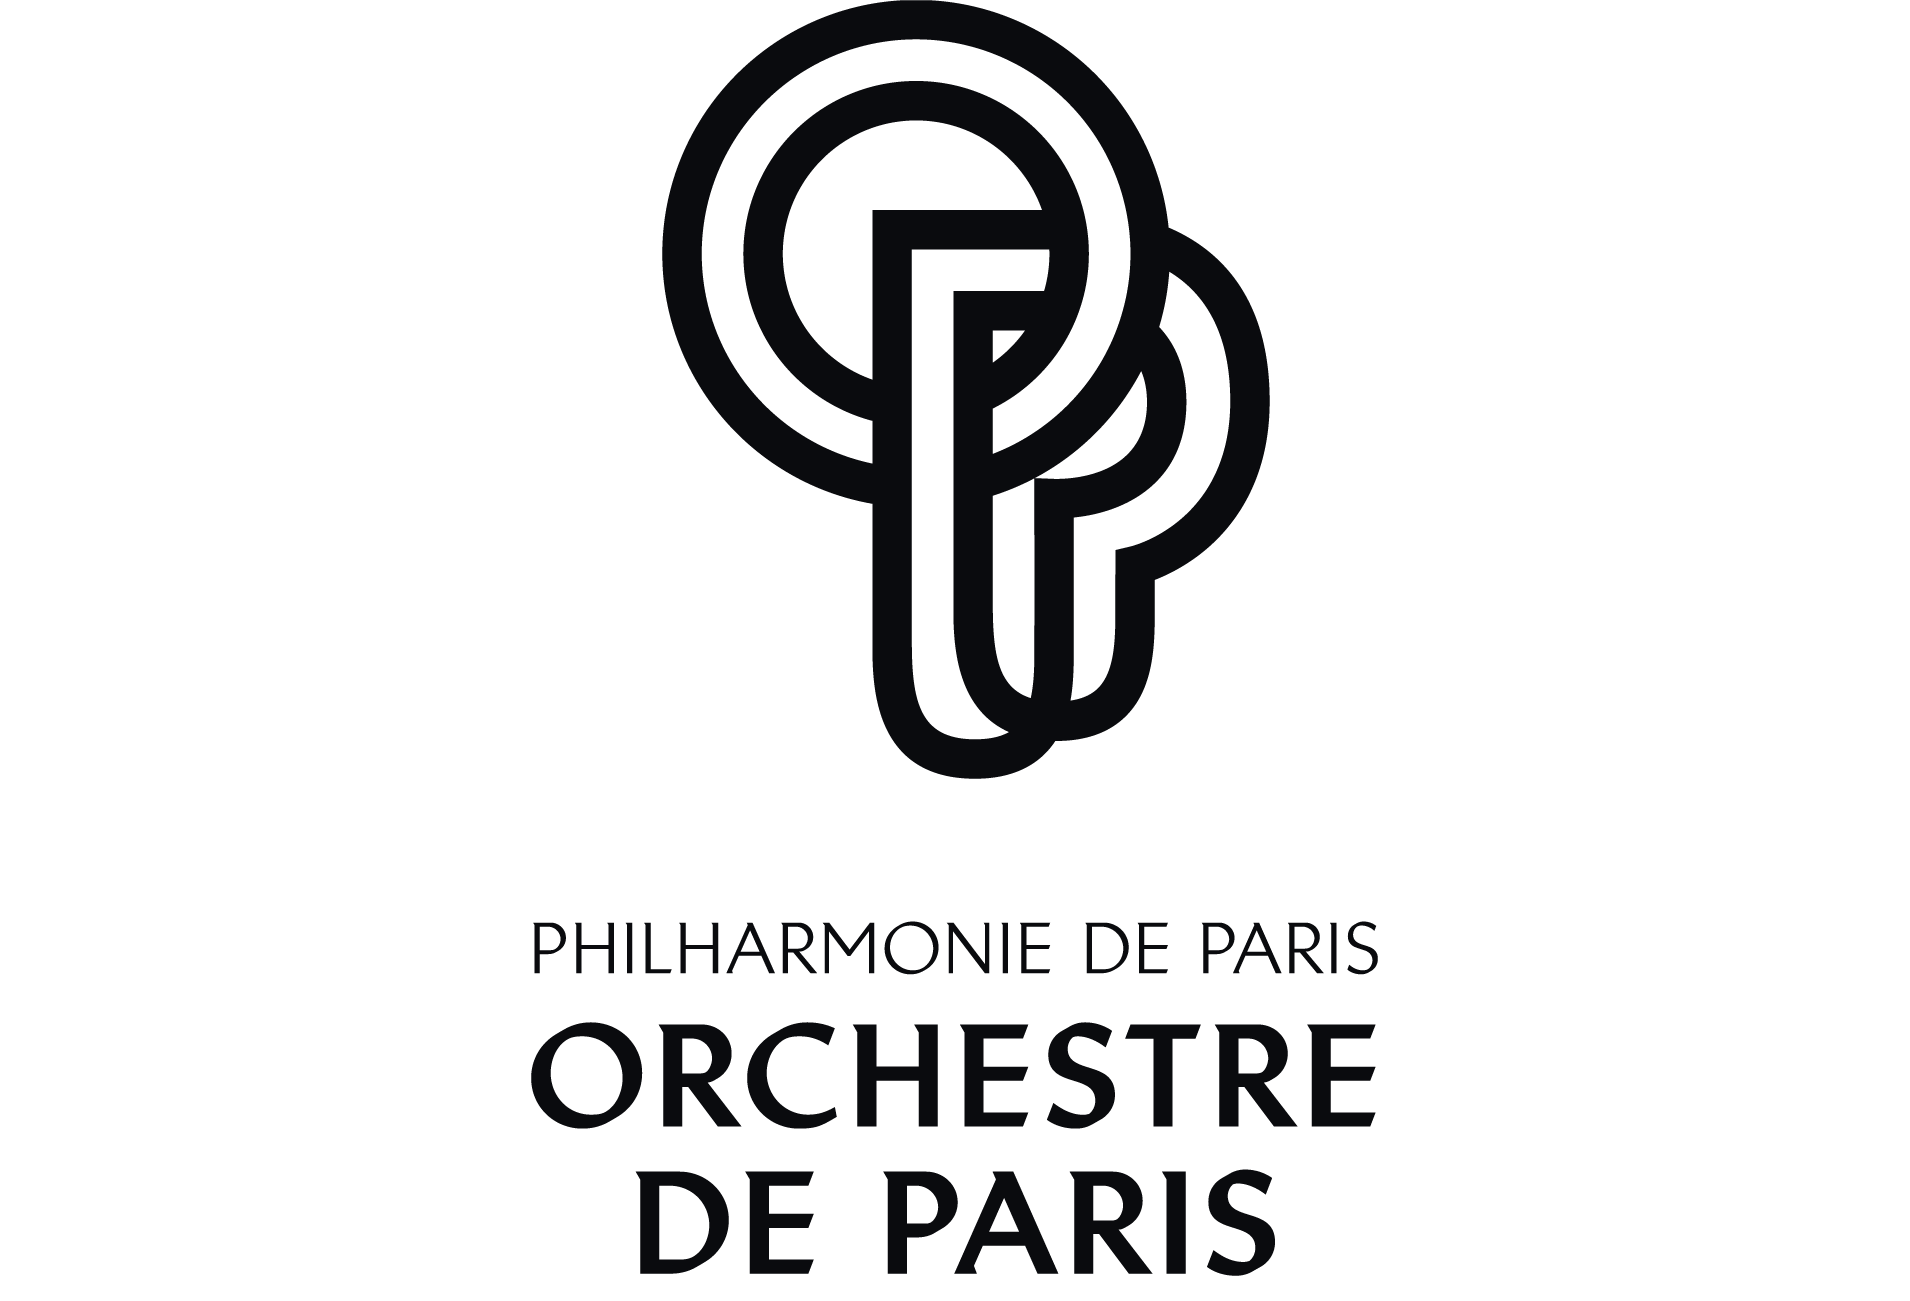 logo-ORCHESTRE-DE-PARIS-vertical